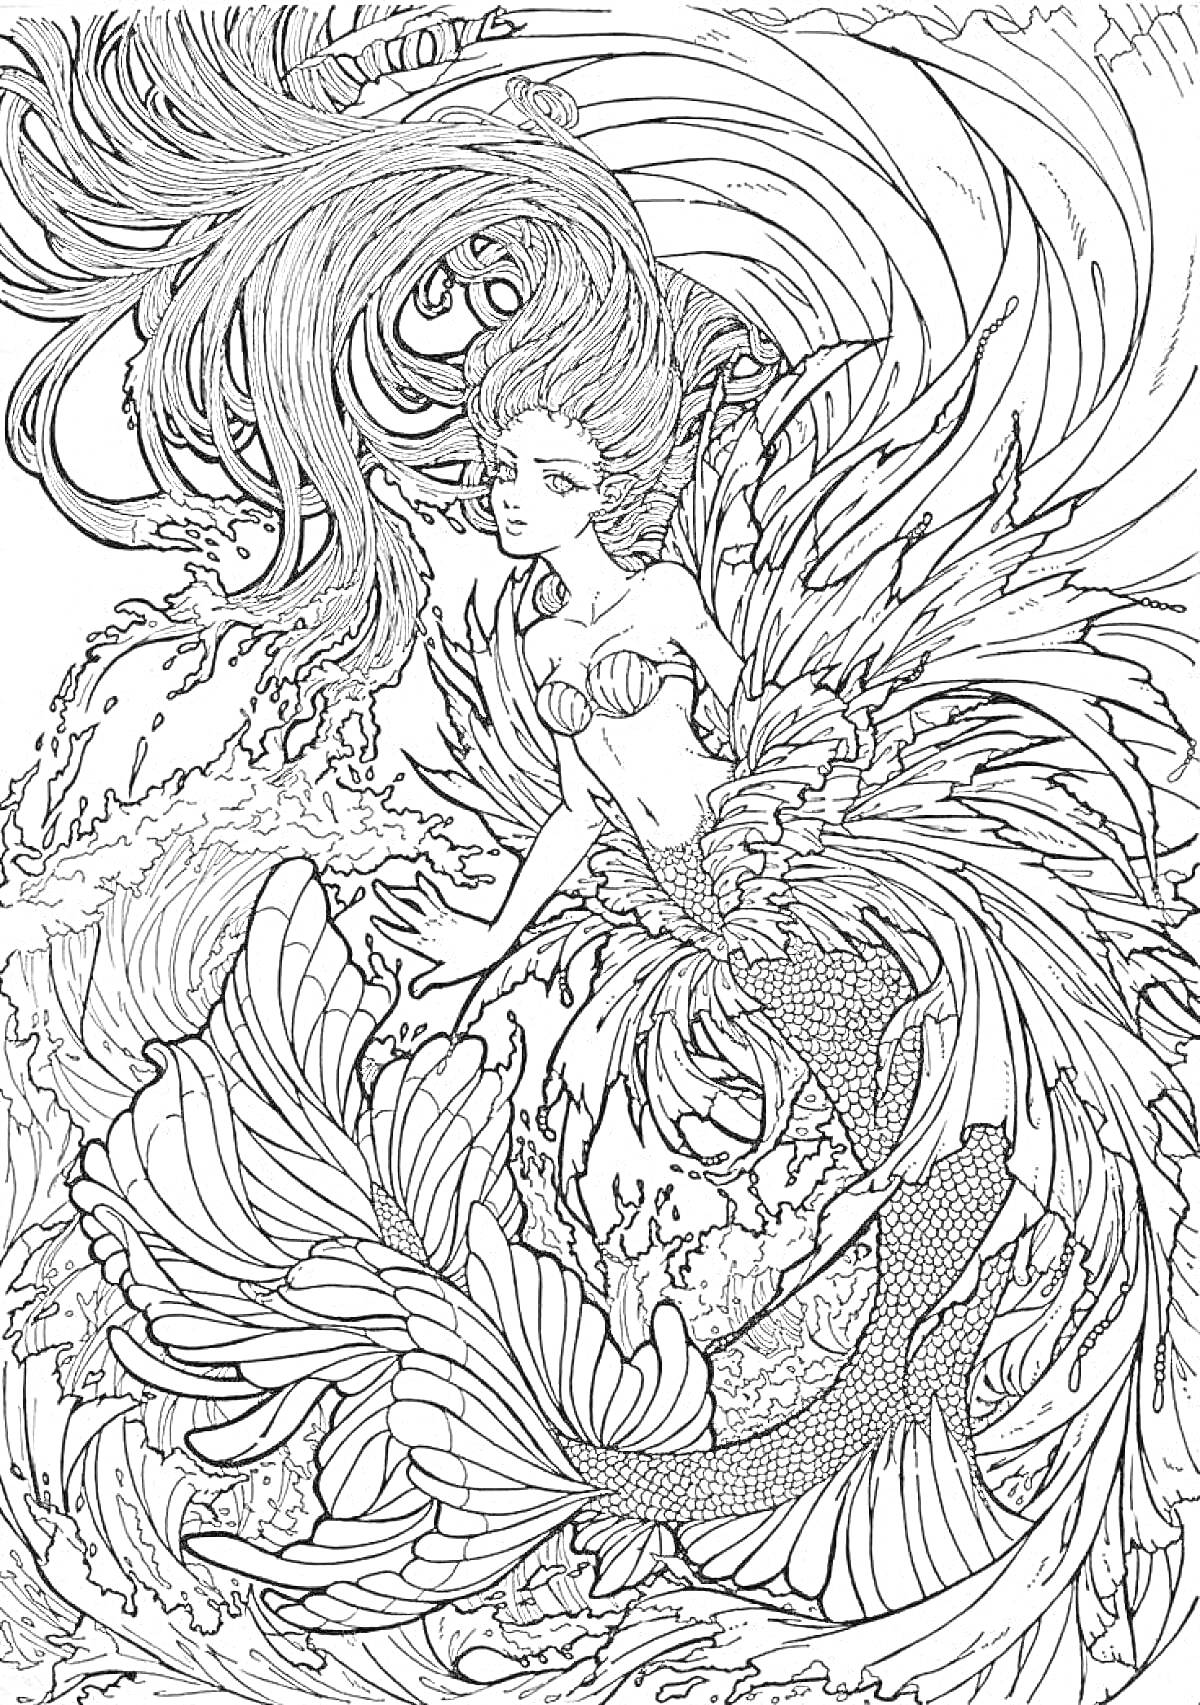 Раскраска Жарптица - русалка с большими распущенными волосами, огненным оперением, рыбьим хвостом, окруженная водоворотом